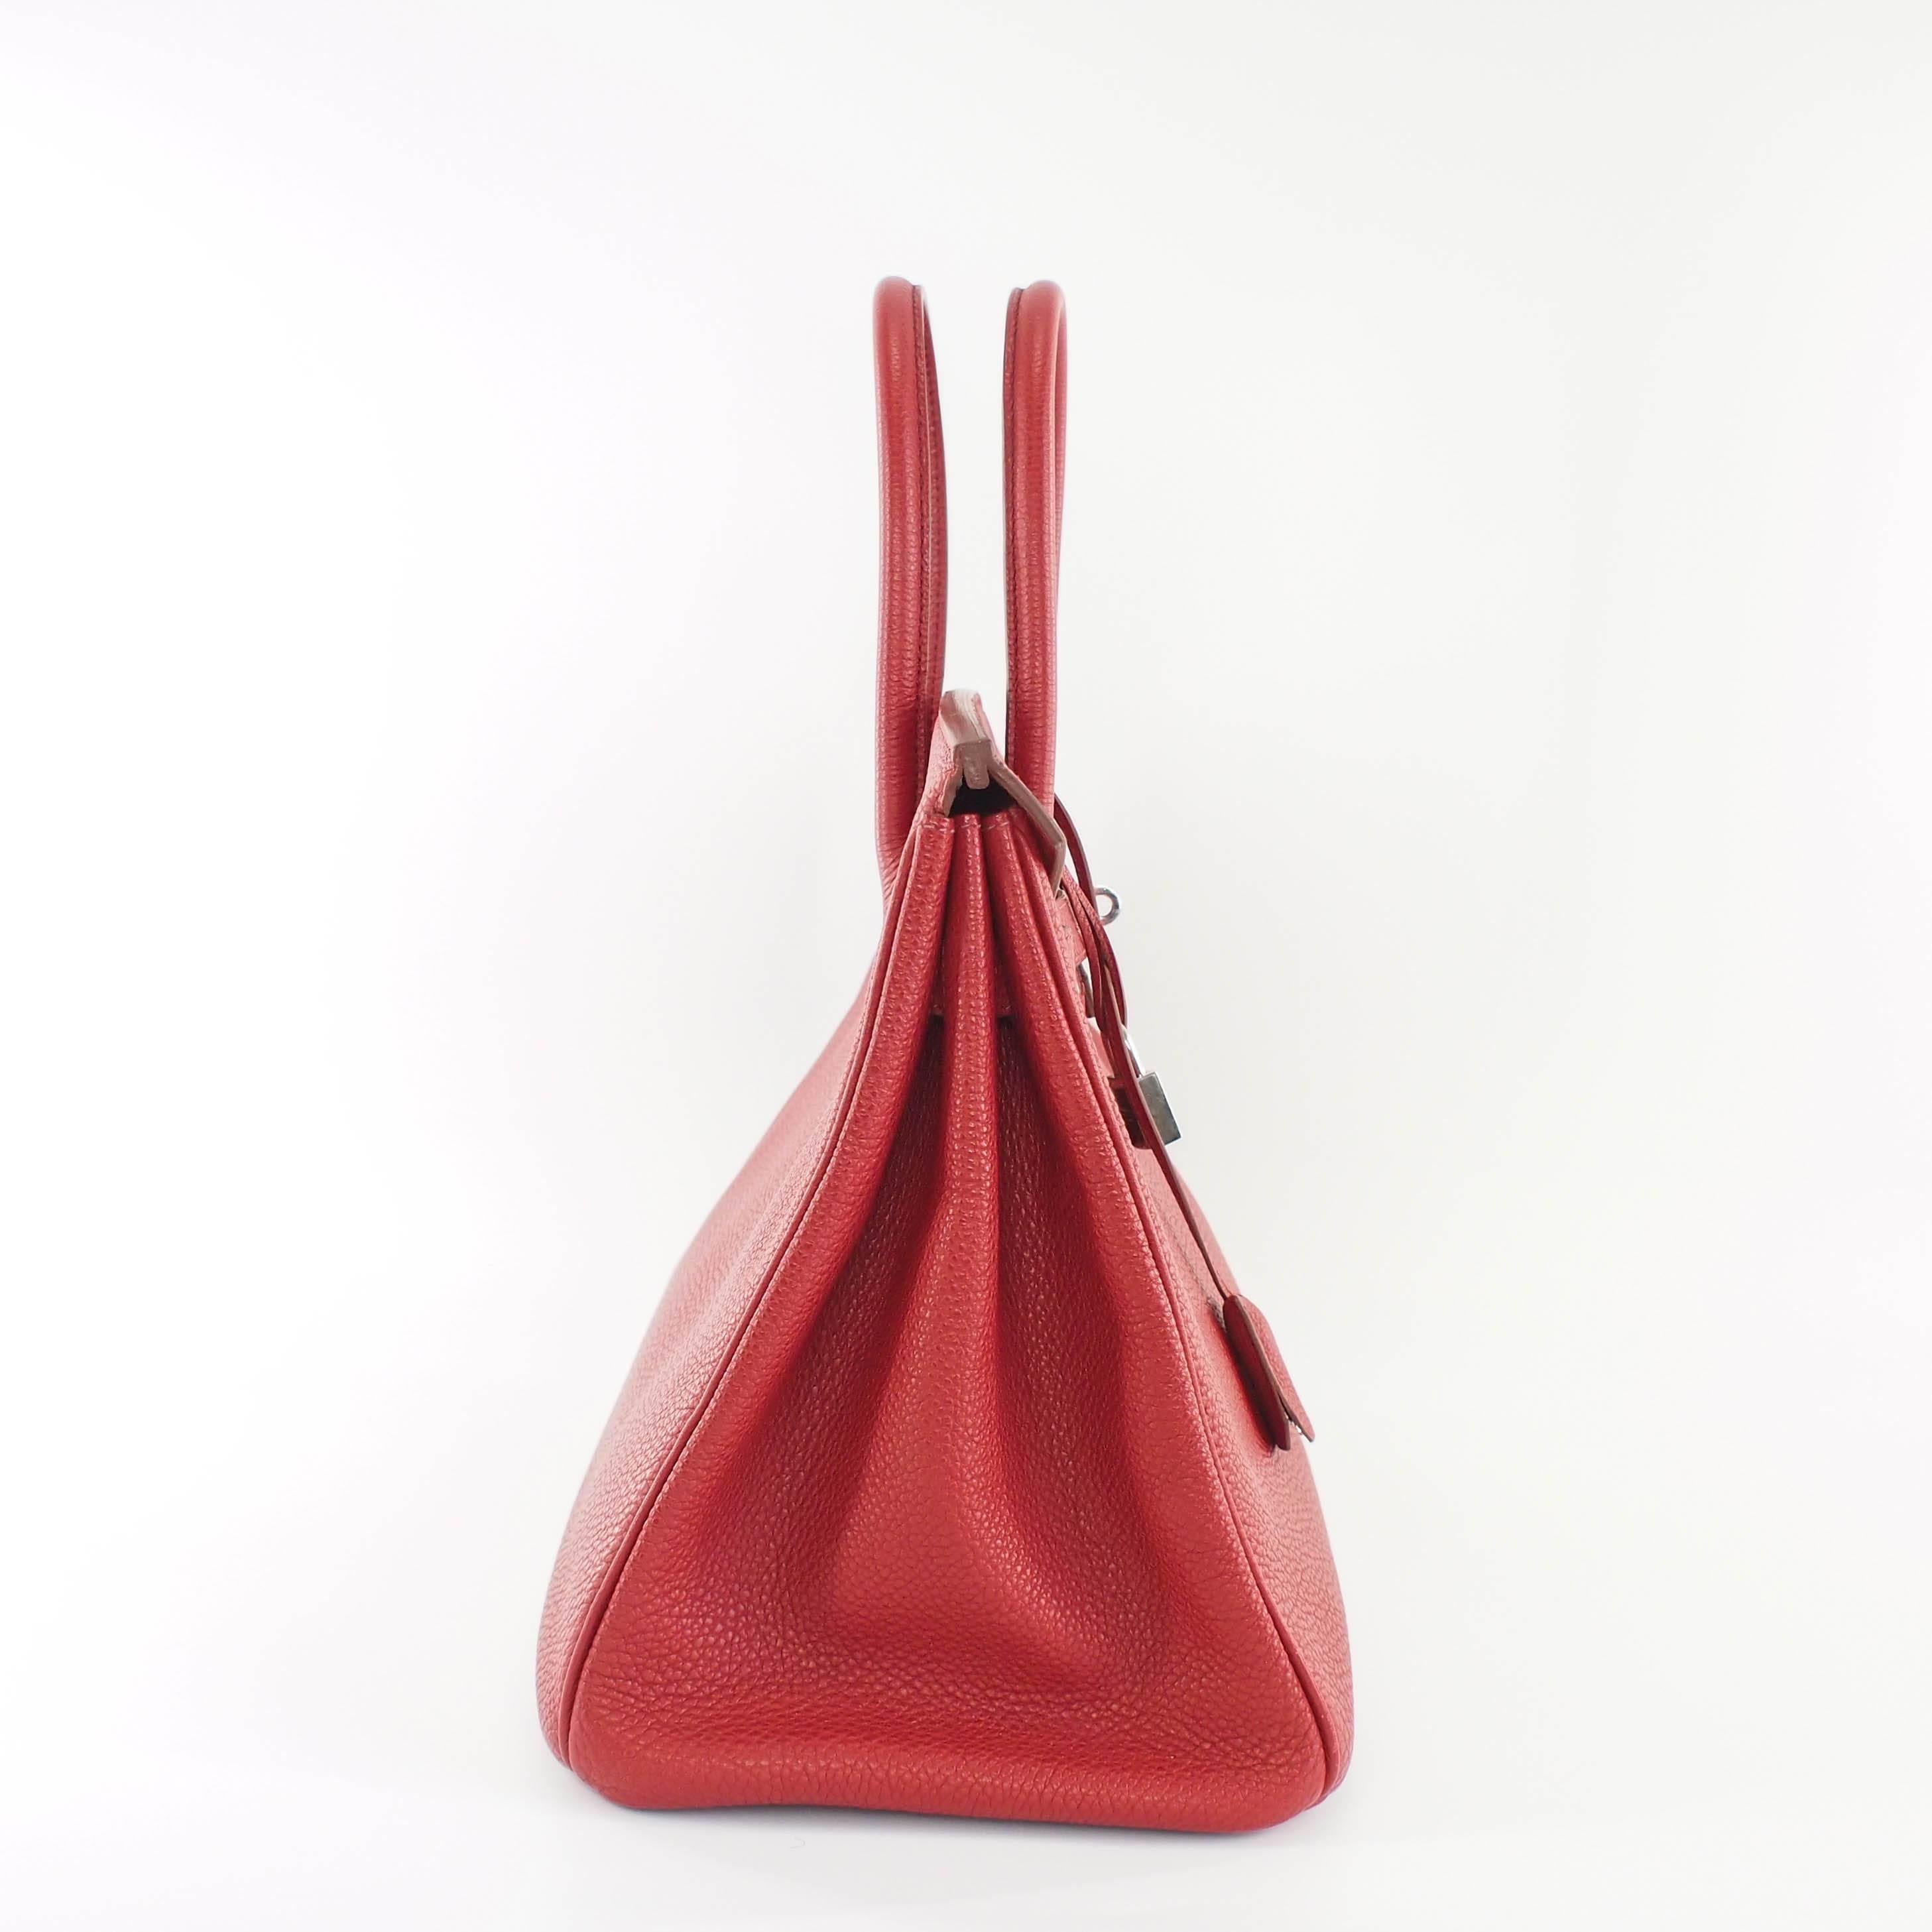 Women's or Men's Hermes Birkin Handbag size 35 in Rouge Grenade With Palladium Hardware (PHW)